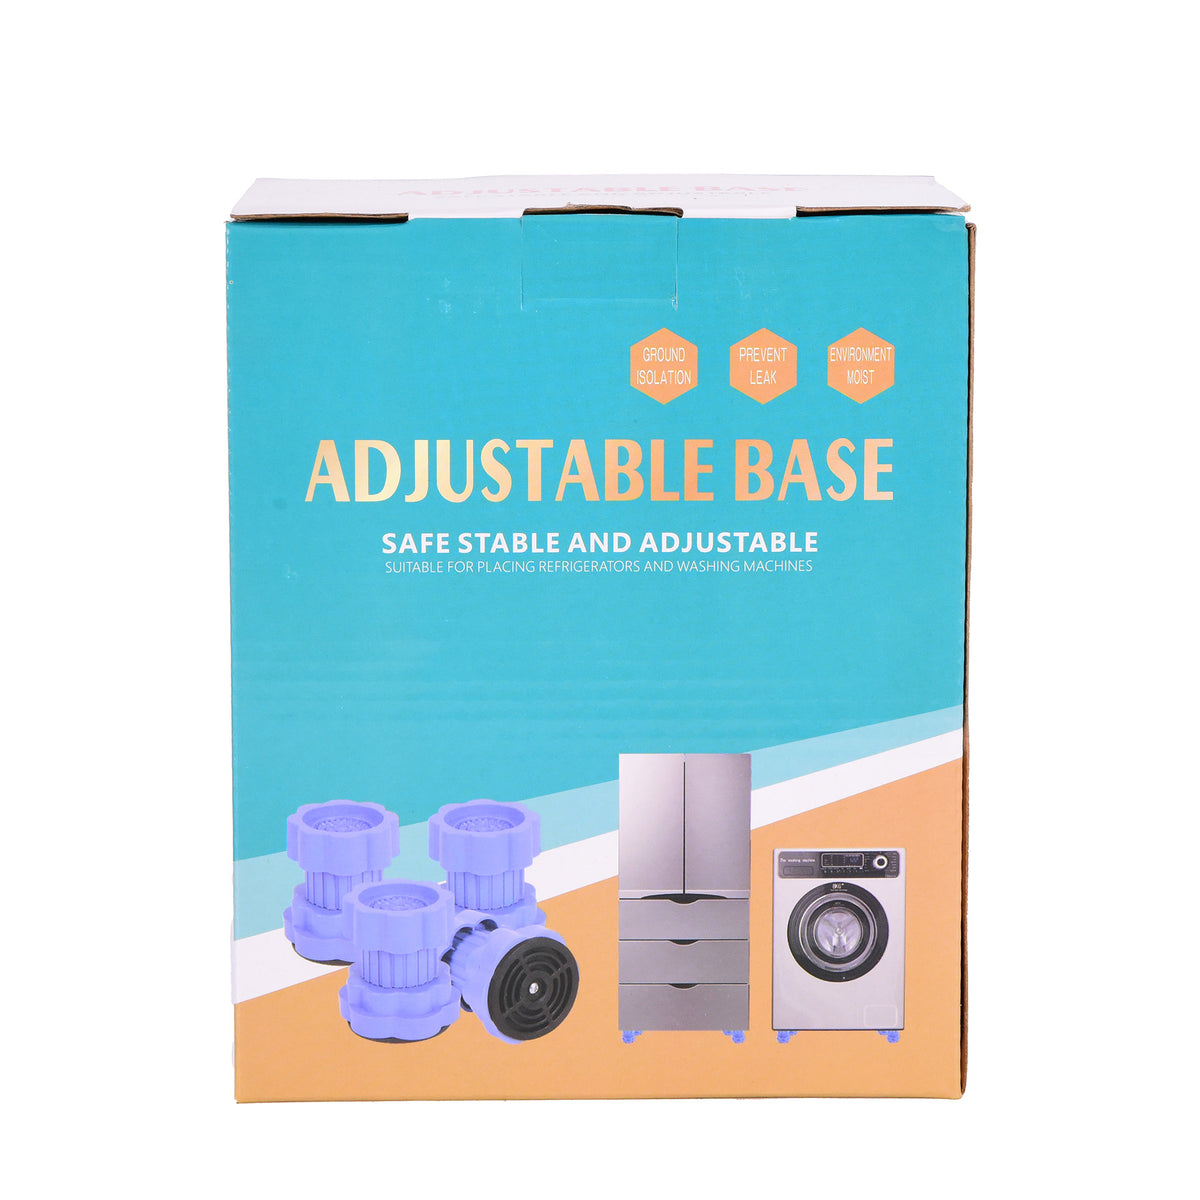 Adjustable furniture & Appliance base